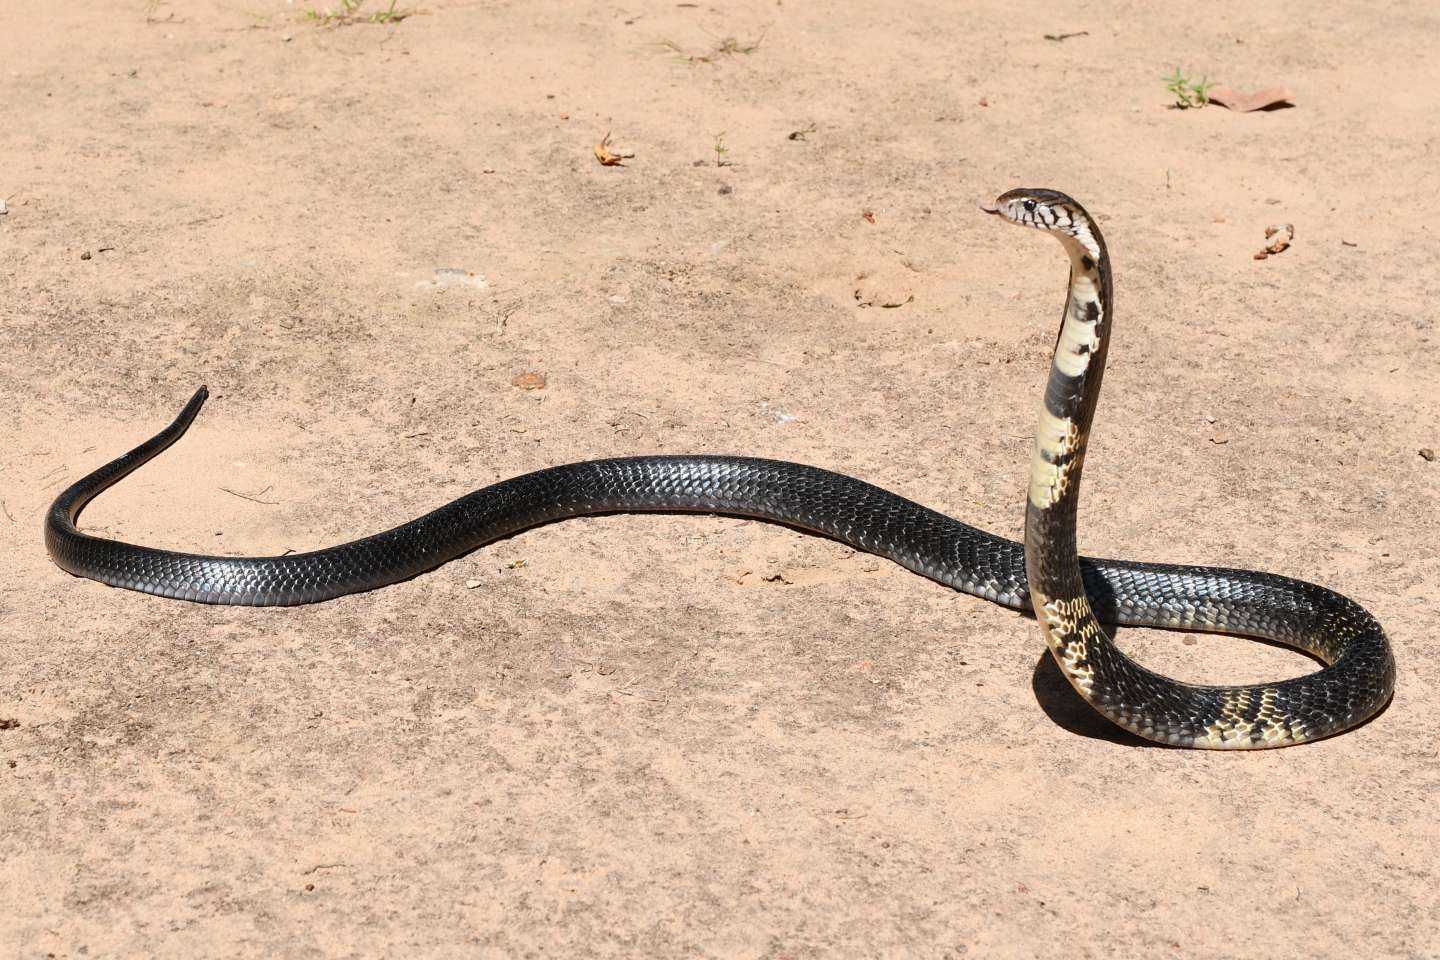 En Afrique, un serpent peut en cacher 369 autres